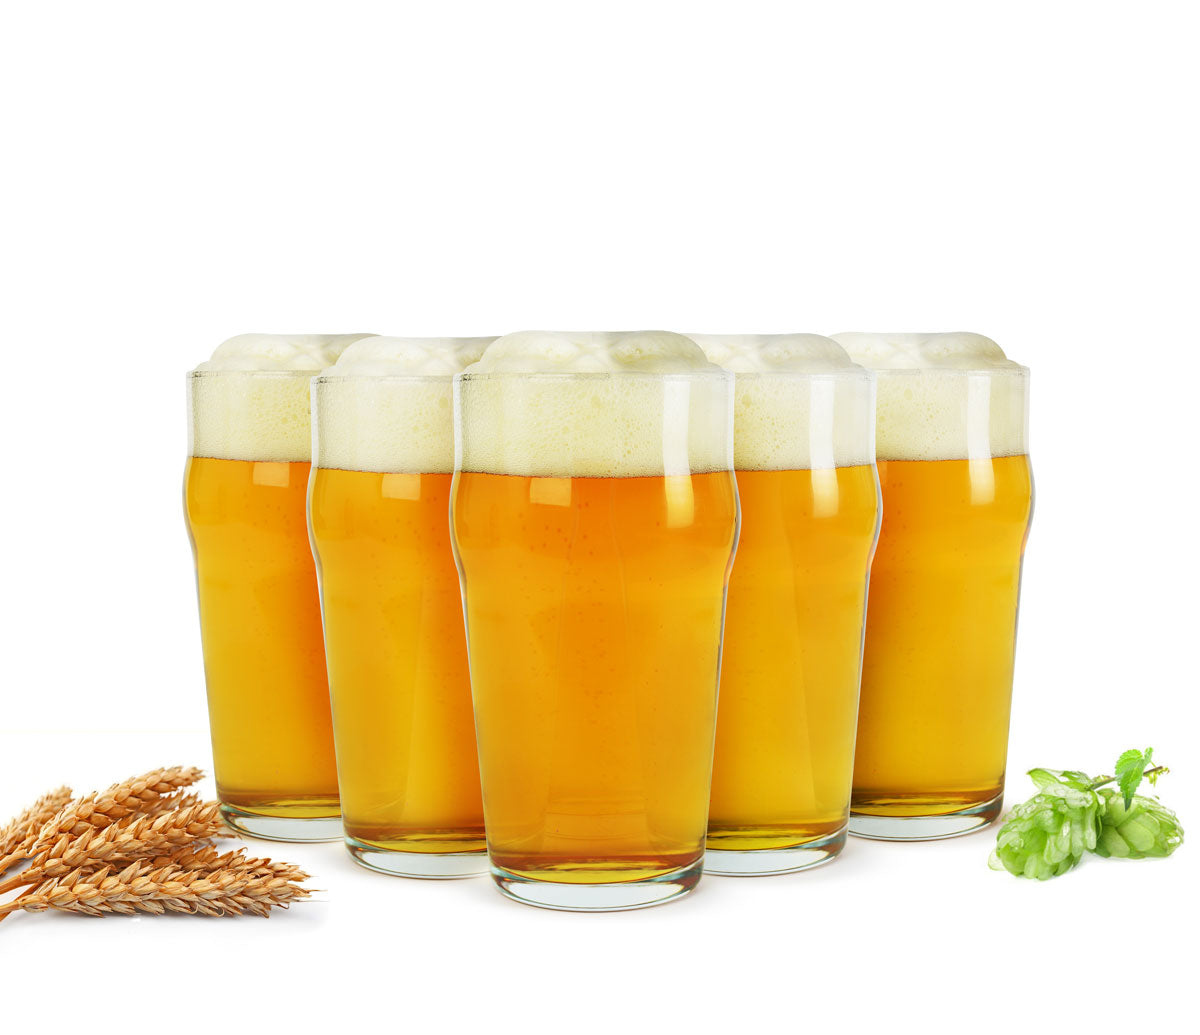 6 Pintgläser 0,5L Biergläser Bierglas Pilsgläser Pint Glas Trinkgläser Saftgläse